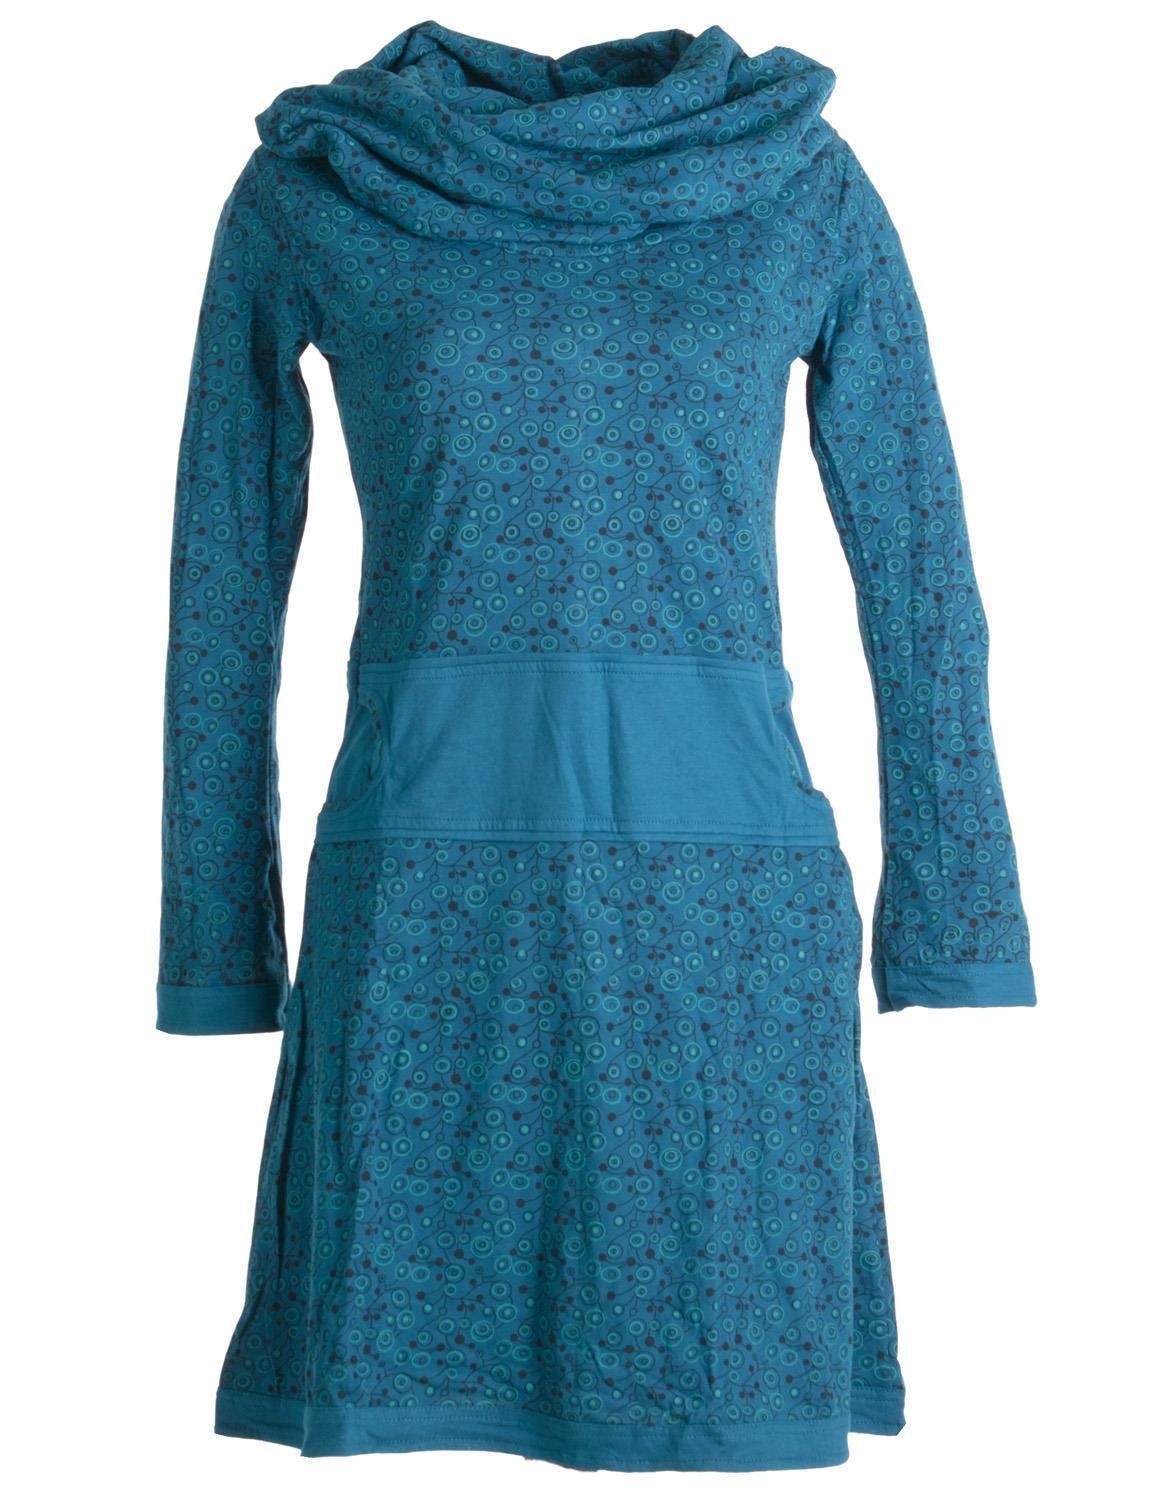 Vishes Jerseykleid Bedrucktes Kleid aus Baumwolle mit Schalkragen Ethno, Goa, Boho, Hippie Style türkis